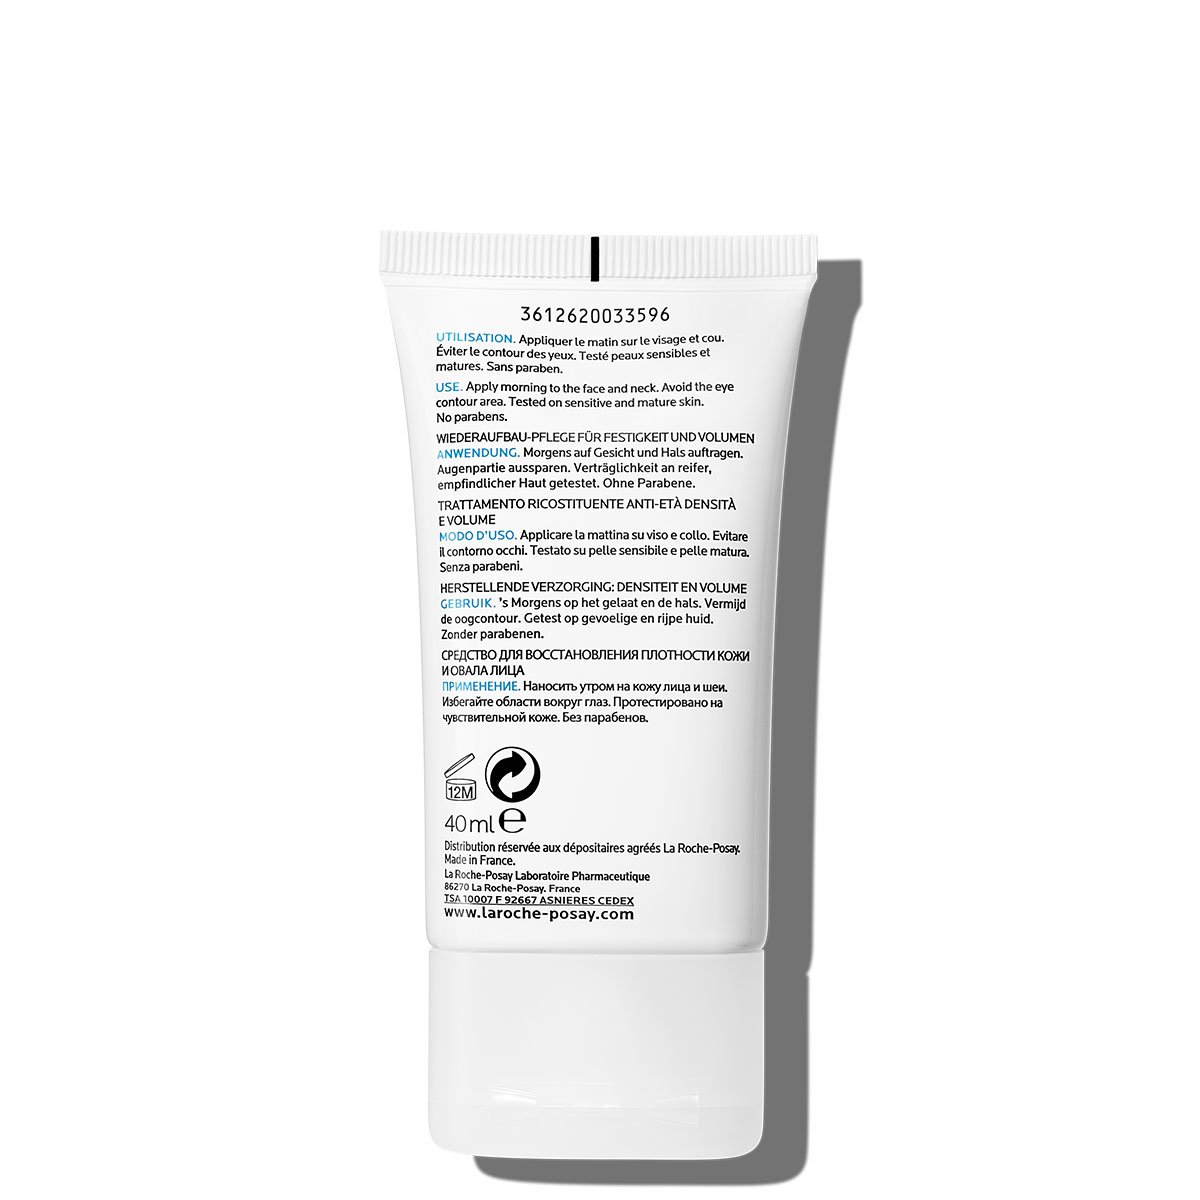 La Roche Posay ProductPage Anti Aging Cream Substiane UV Spf15 40ml 33